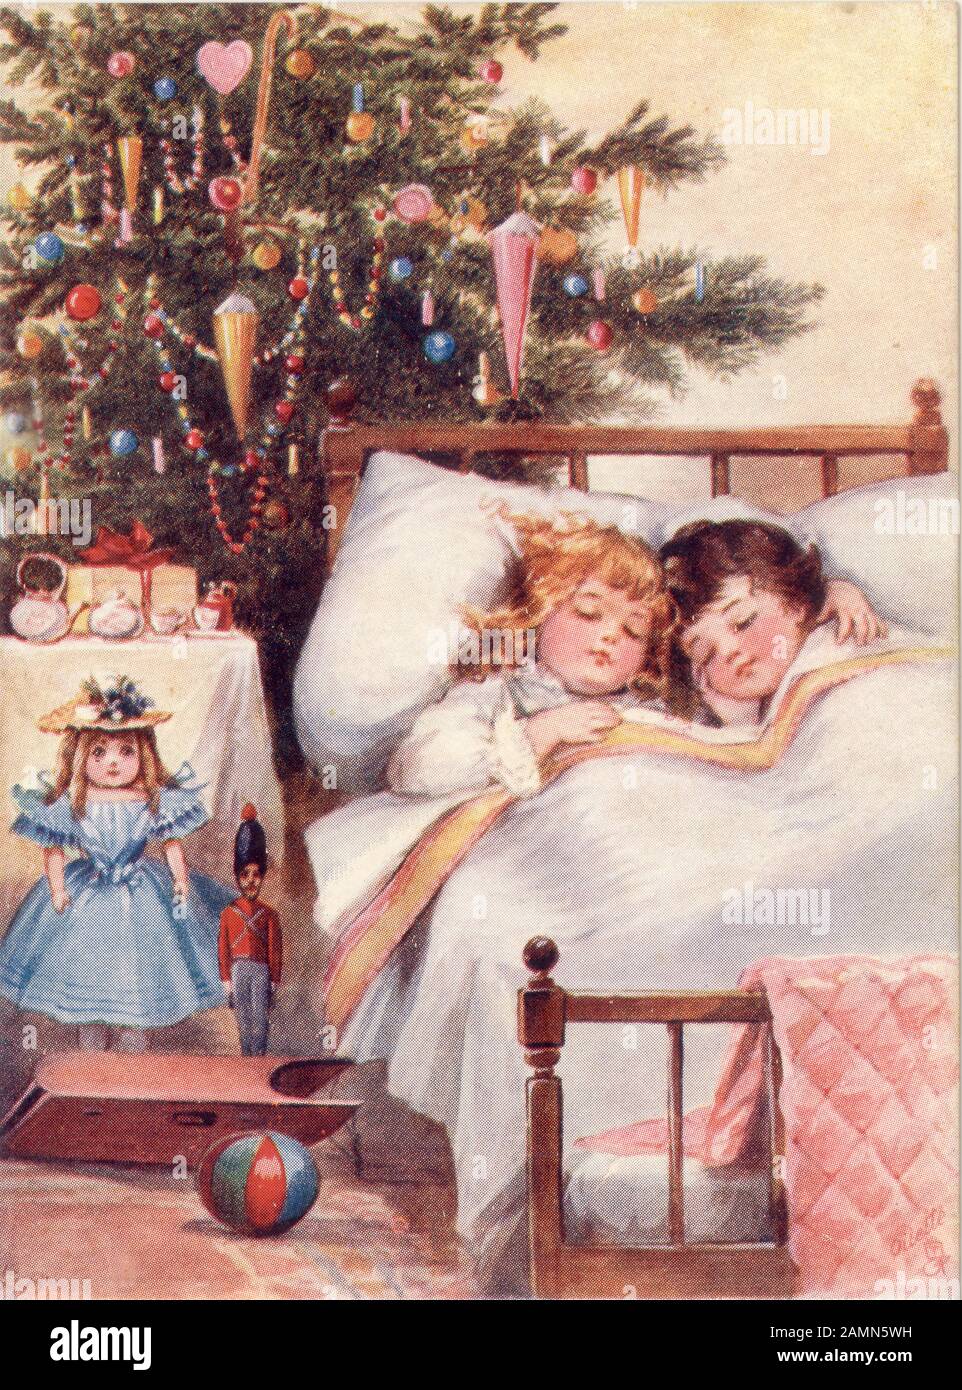 Cartolina di auguri di Natale originale e carina tradizionale dei bambini, nascosta nel letto la mattina di Natale con regali e alberi, olietta originale, risalente al 1900 circa in Inghilterra, Regno Unito Foto Stock